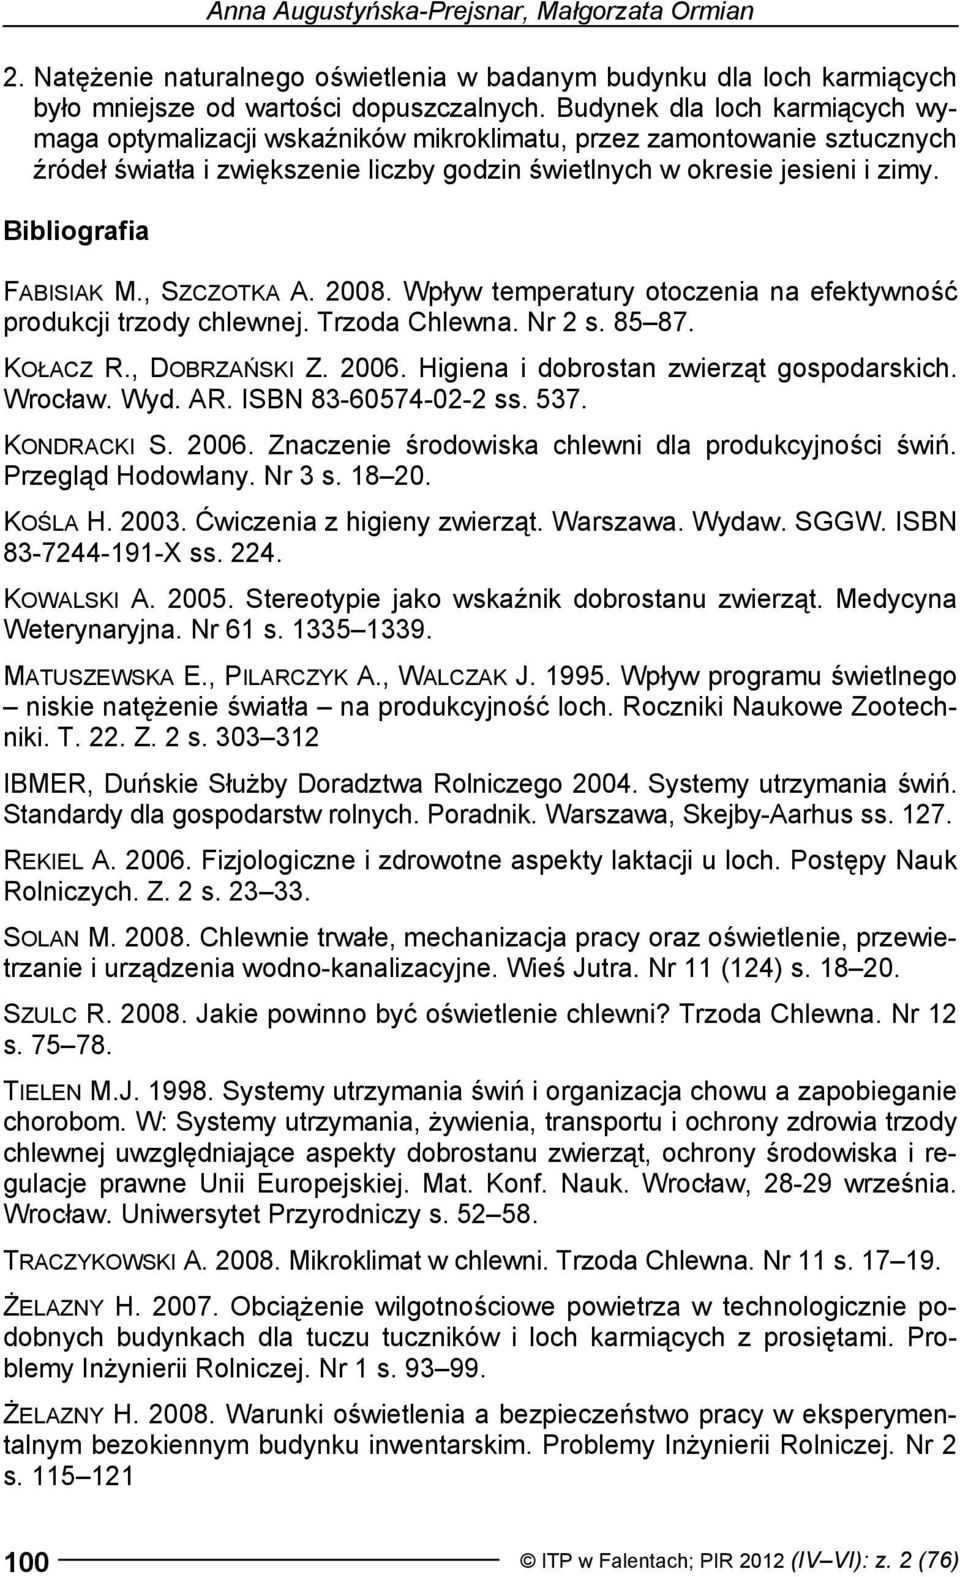 Bibliografia FABISIAK M., SZCZOTKA A. 2008. Wpływ temperatury otoczenia na efektywność produkcji trzody chlewnej. Trzoda Chlewna. Nr 2 s. 85 87. KOŁACZ R., DOBRZAŃSKI Z. 2006.